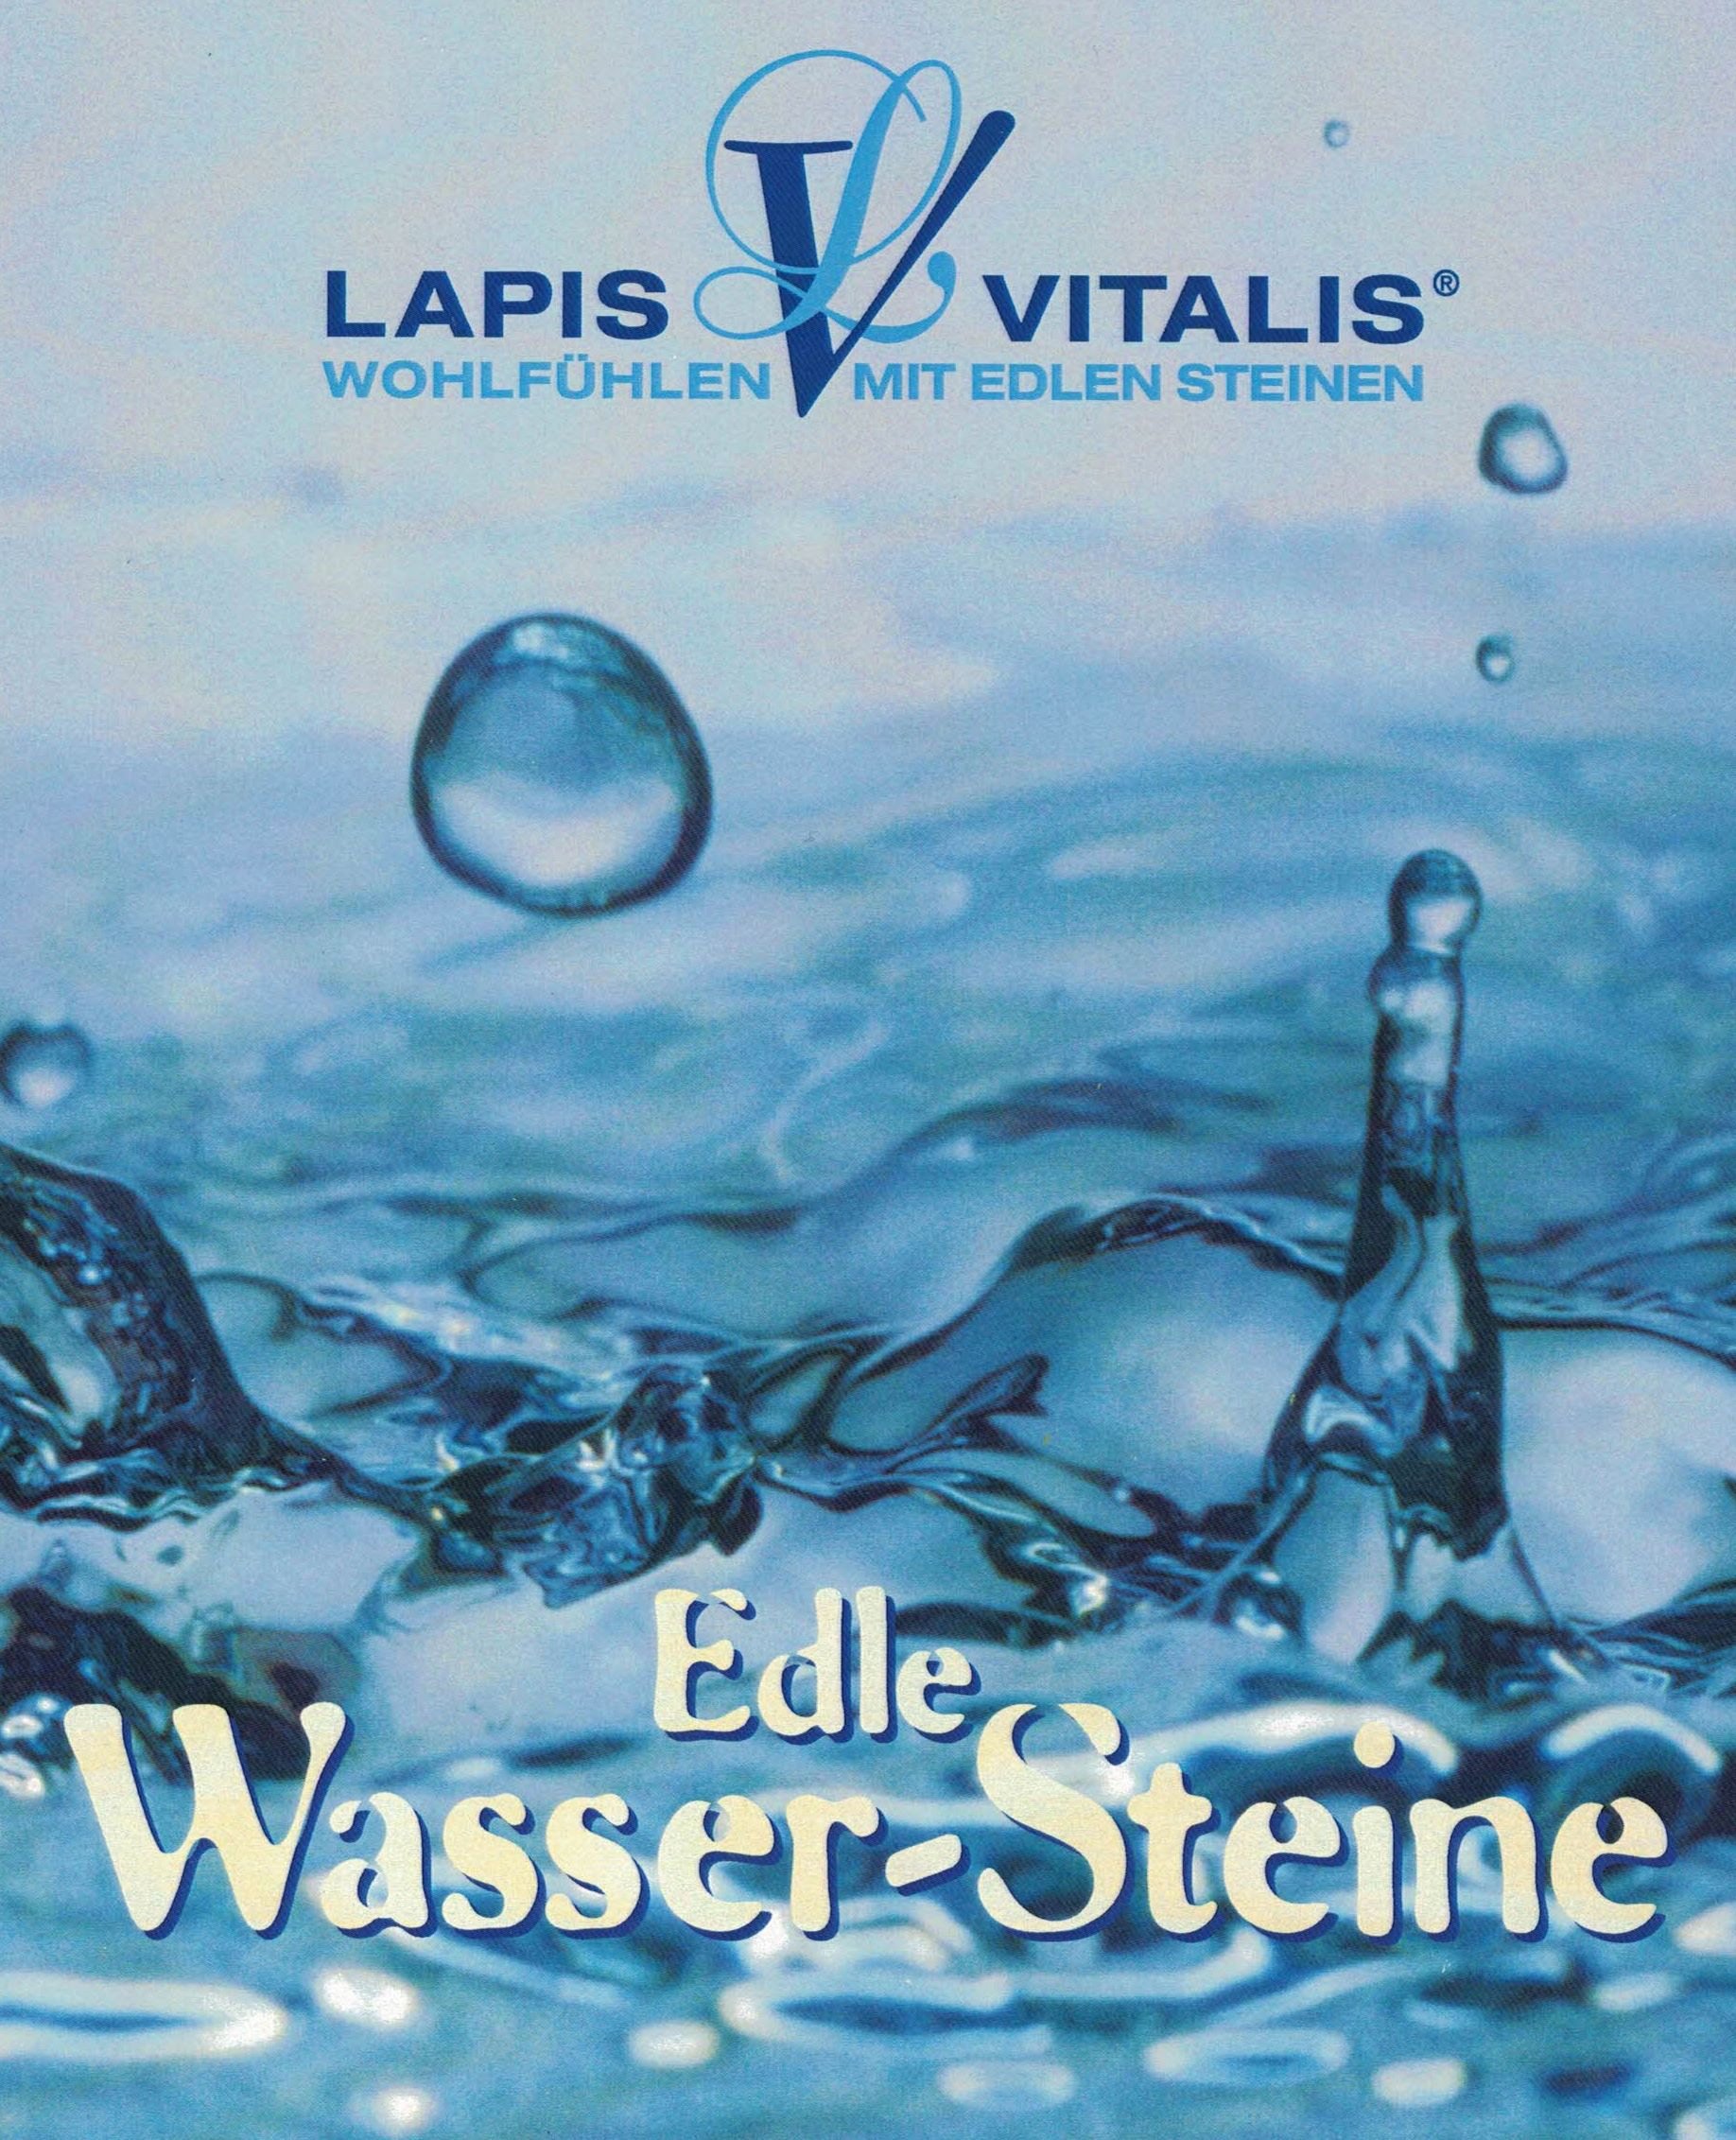 Edelstein Wasser mit Geschenkdose - Eros & Vergnügen Lapis Vitalis®